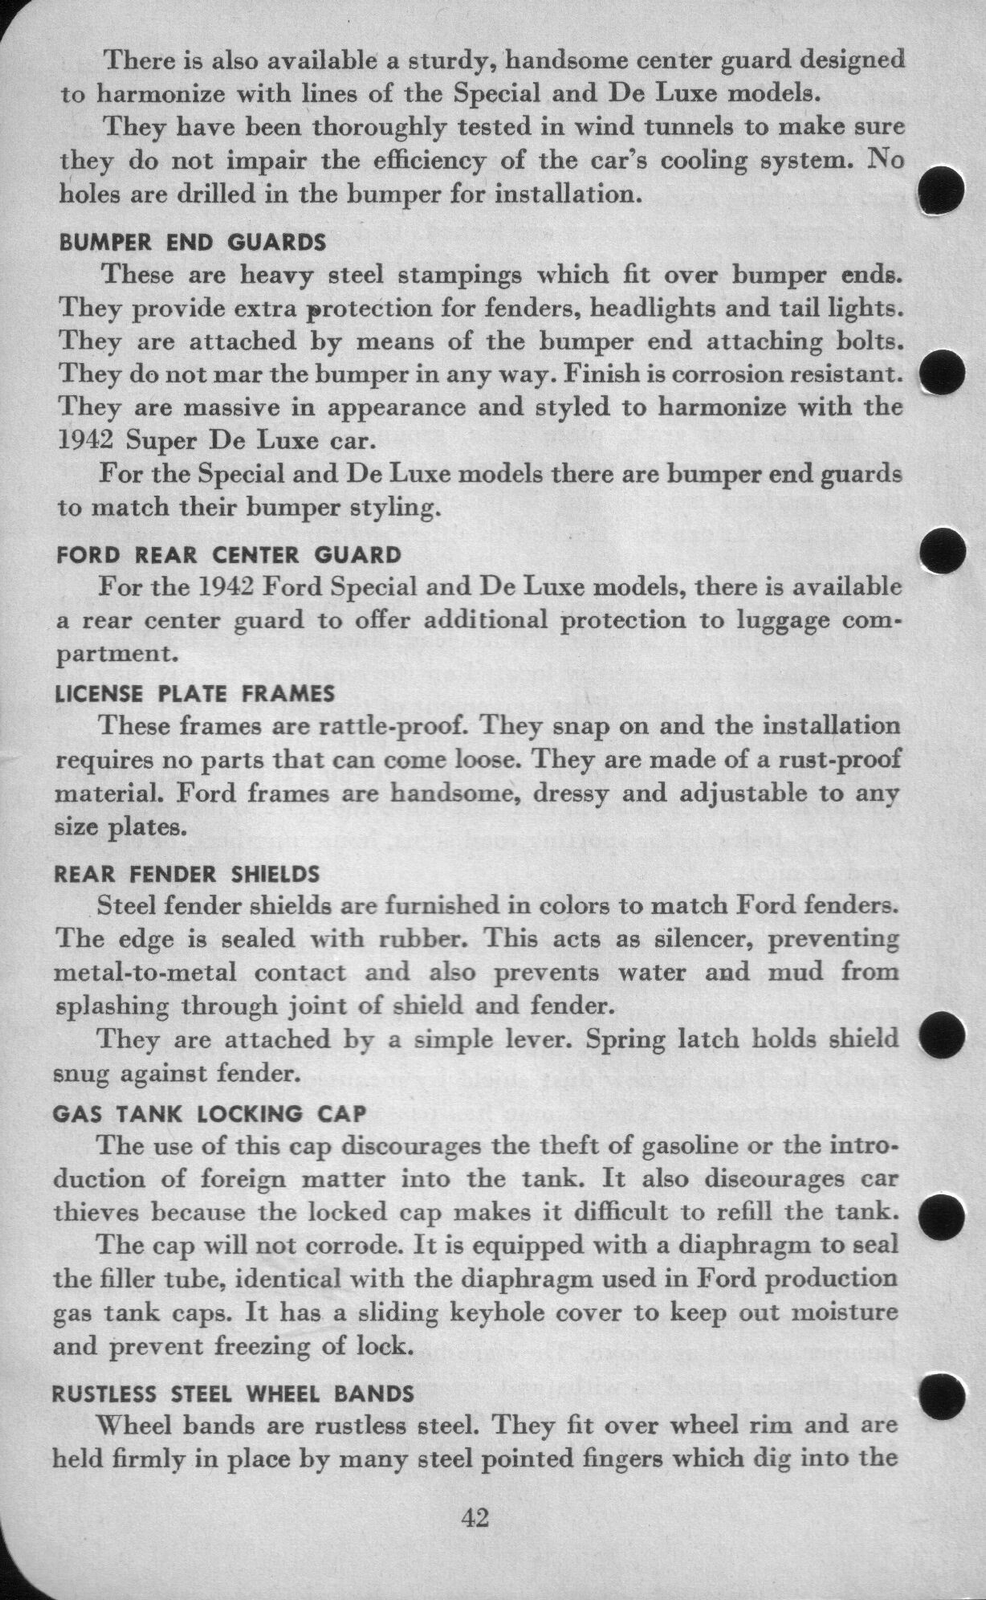 n_1942 Ford Salesmans Reference Manual-042.jpg